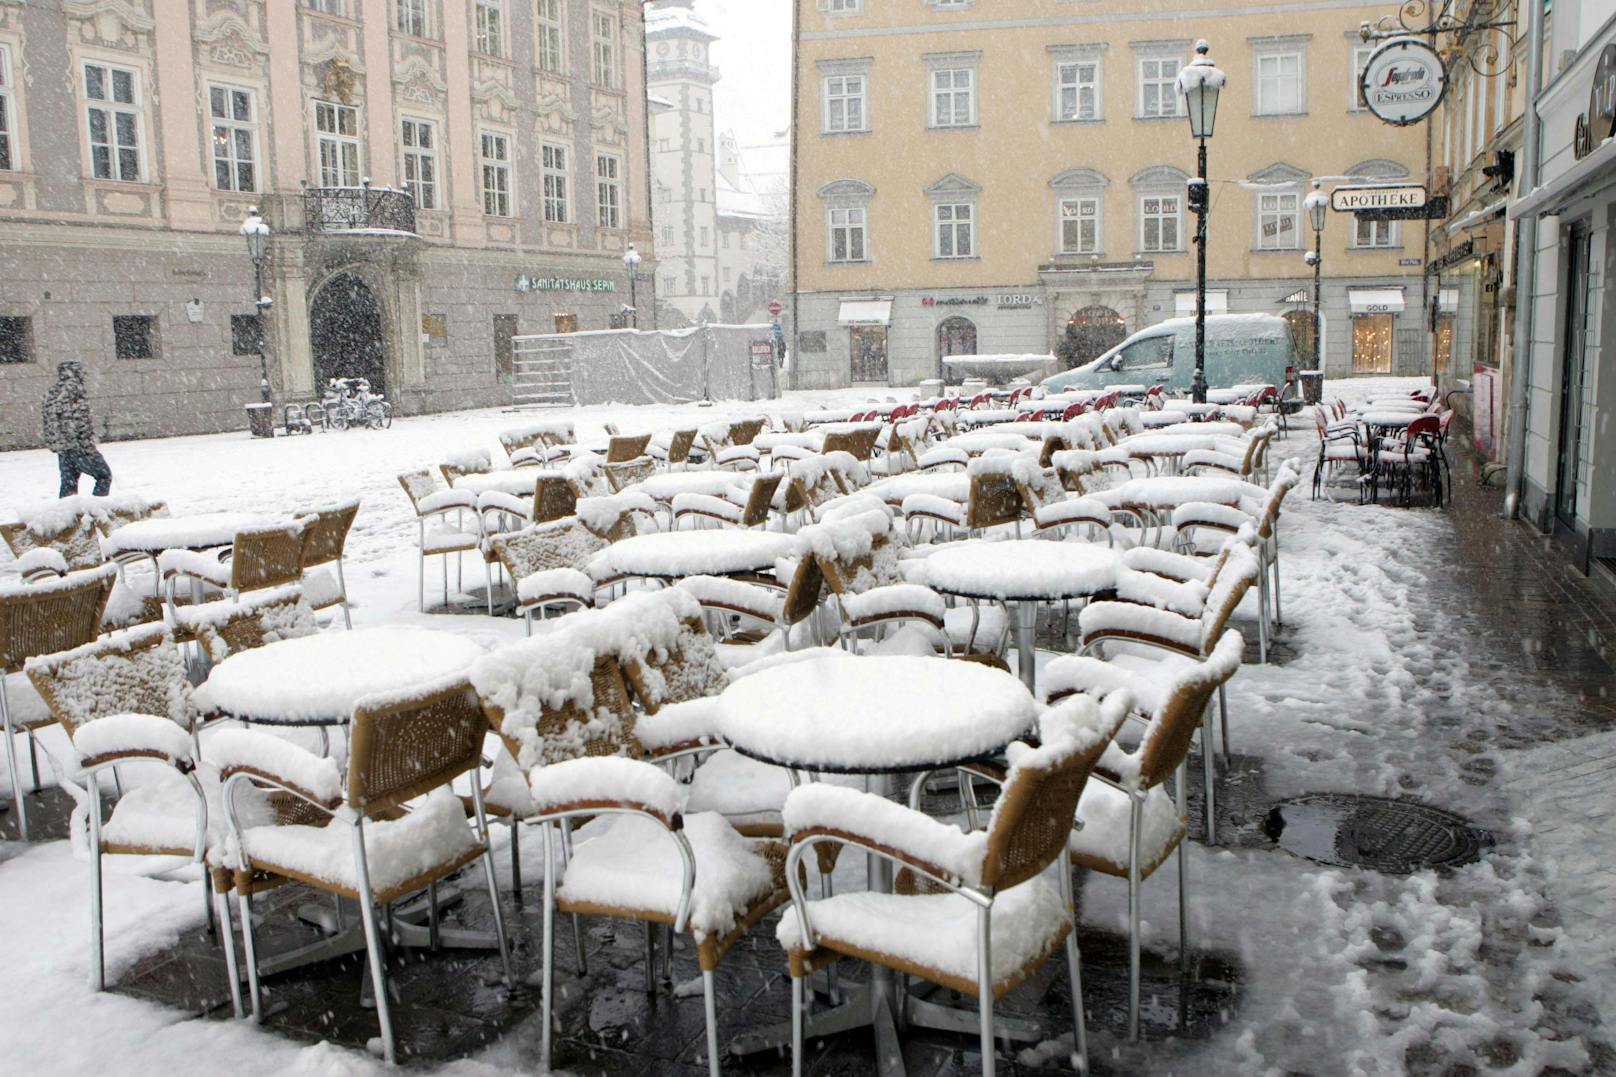 Schnee in Klagenfurt mitten im März nach einem Kälteeinbruch. Archivbild.